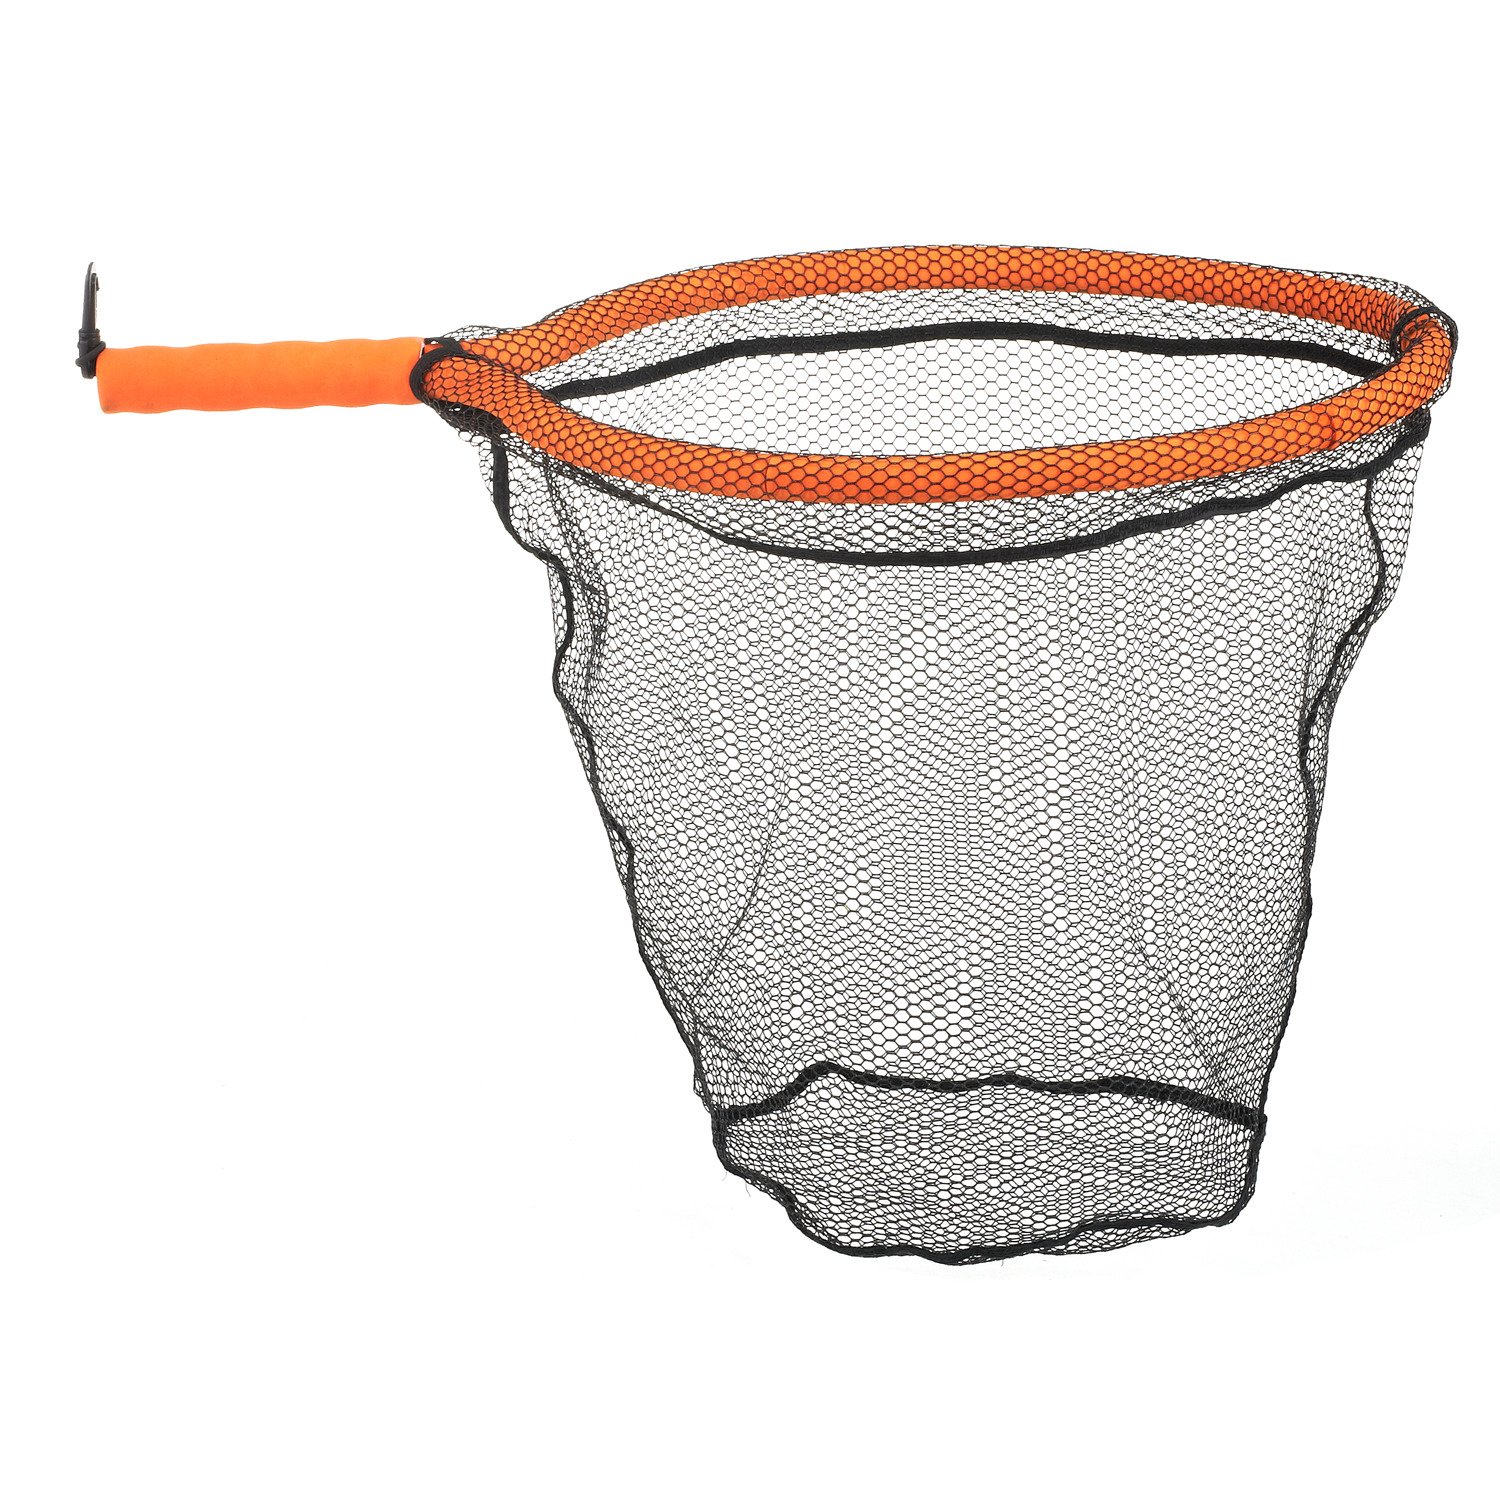  ForEverlast Fishing Net Bag, 15 Gallon,Green : Sports